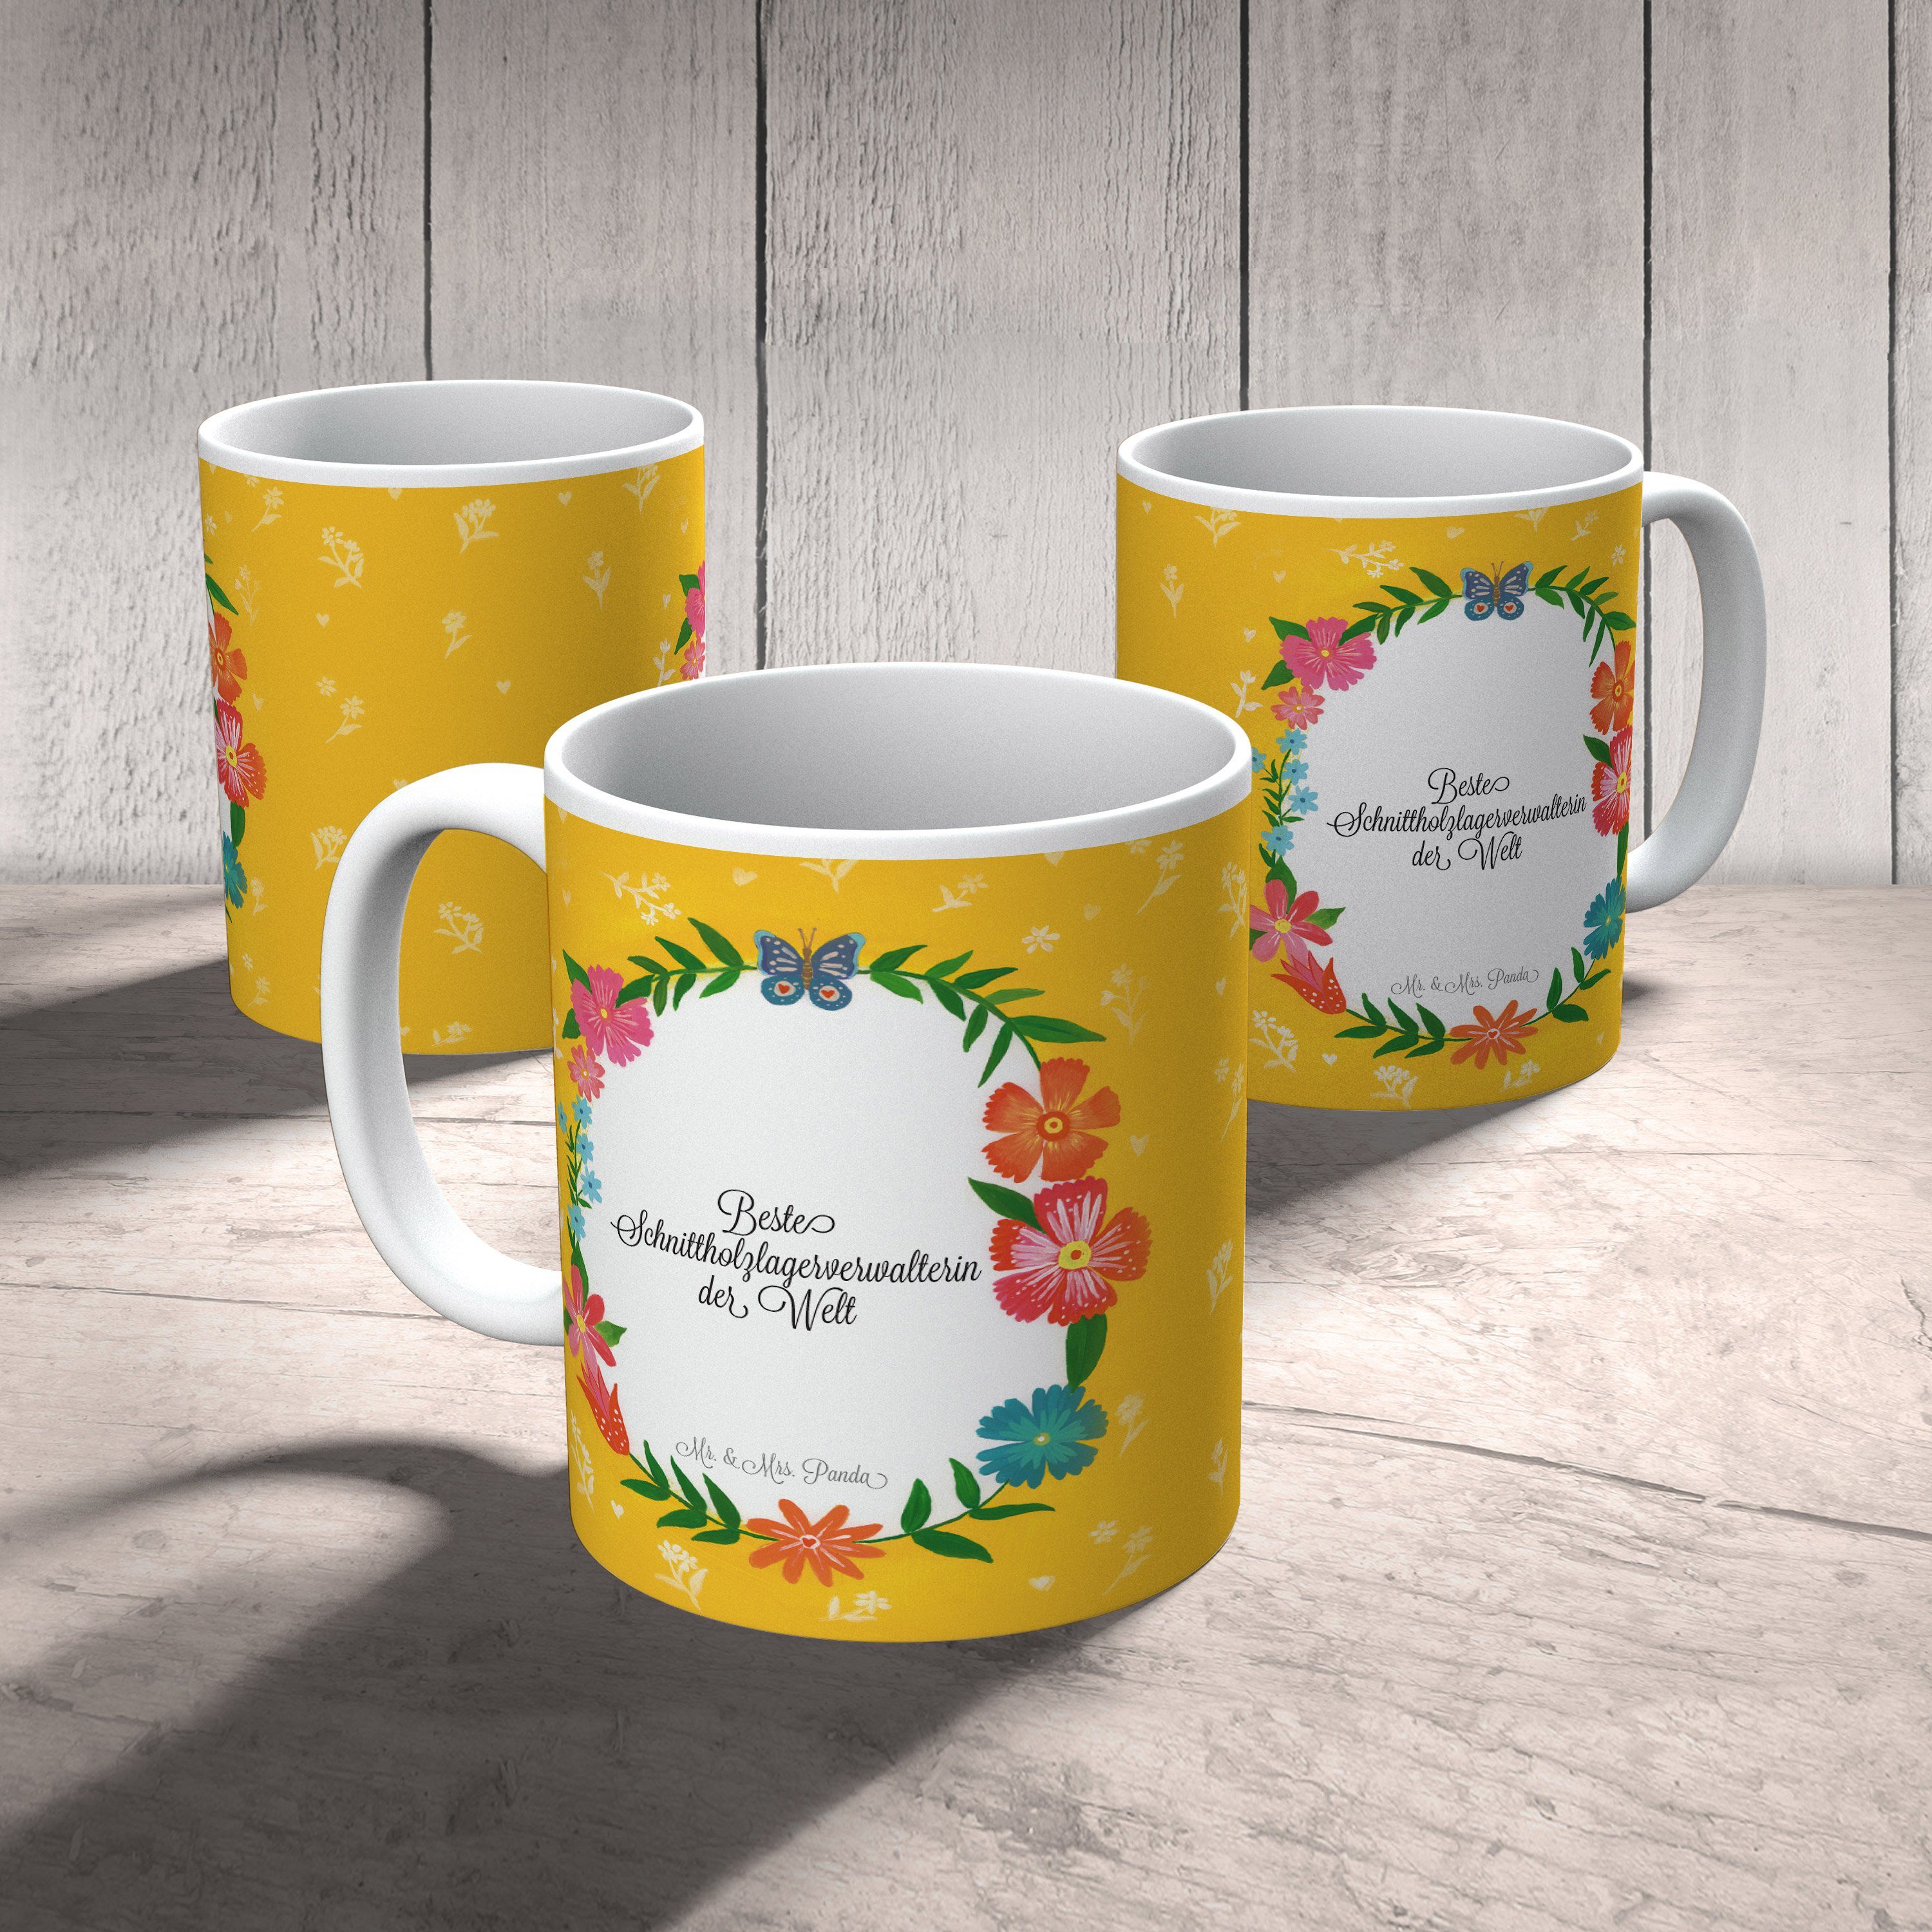 Tasse, Beruf, - Geschenk Geschenk, Mr. Panda Schnittholzlagerverwalterin Mrs. & Tasse, Tasse Keramik